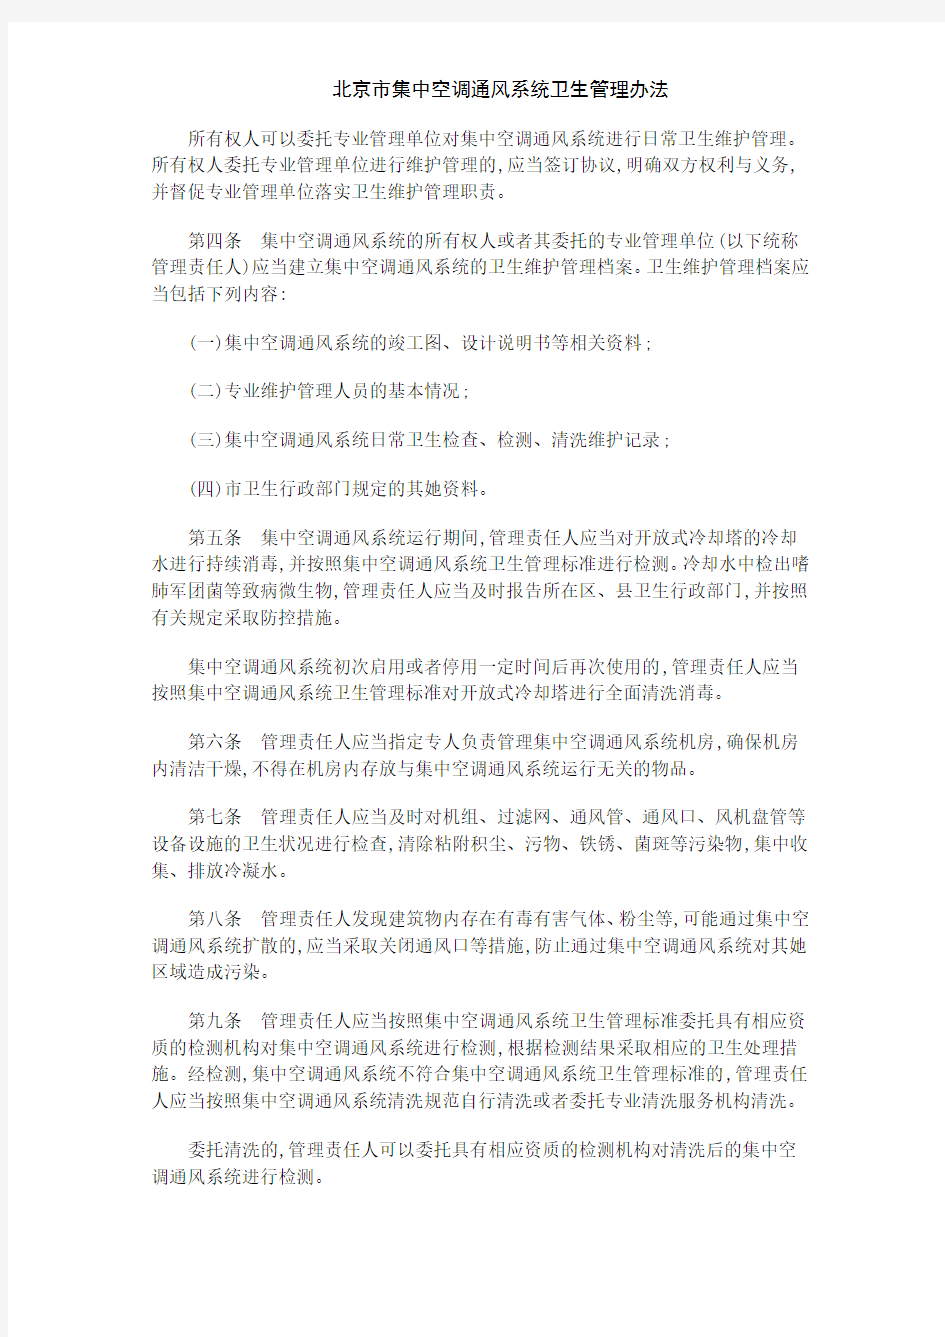 北京市集中空调通风系统卫生管理办法